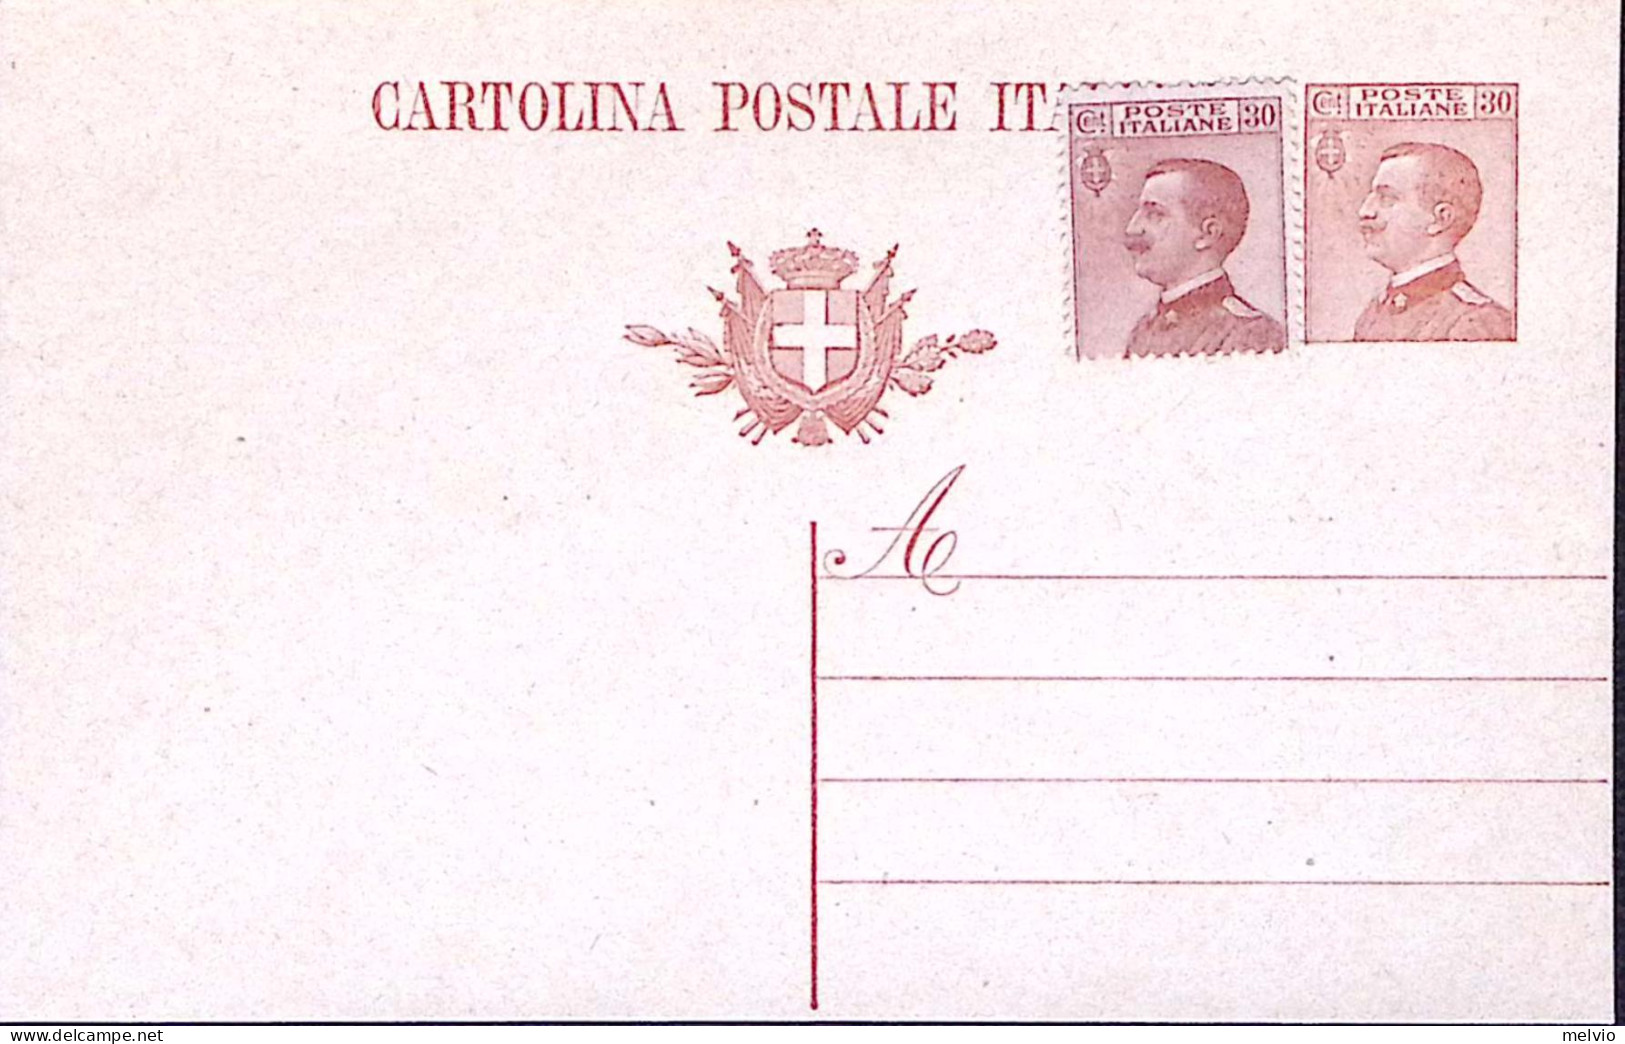 1923-Cartolina Postale Michetti C.30 Senza Millesimo Nuova Predisposta Con Aggiu - Interi Postali